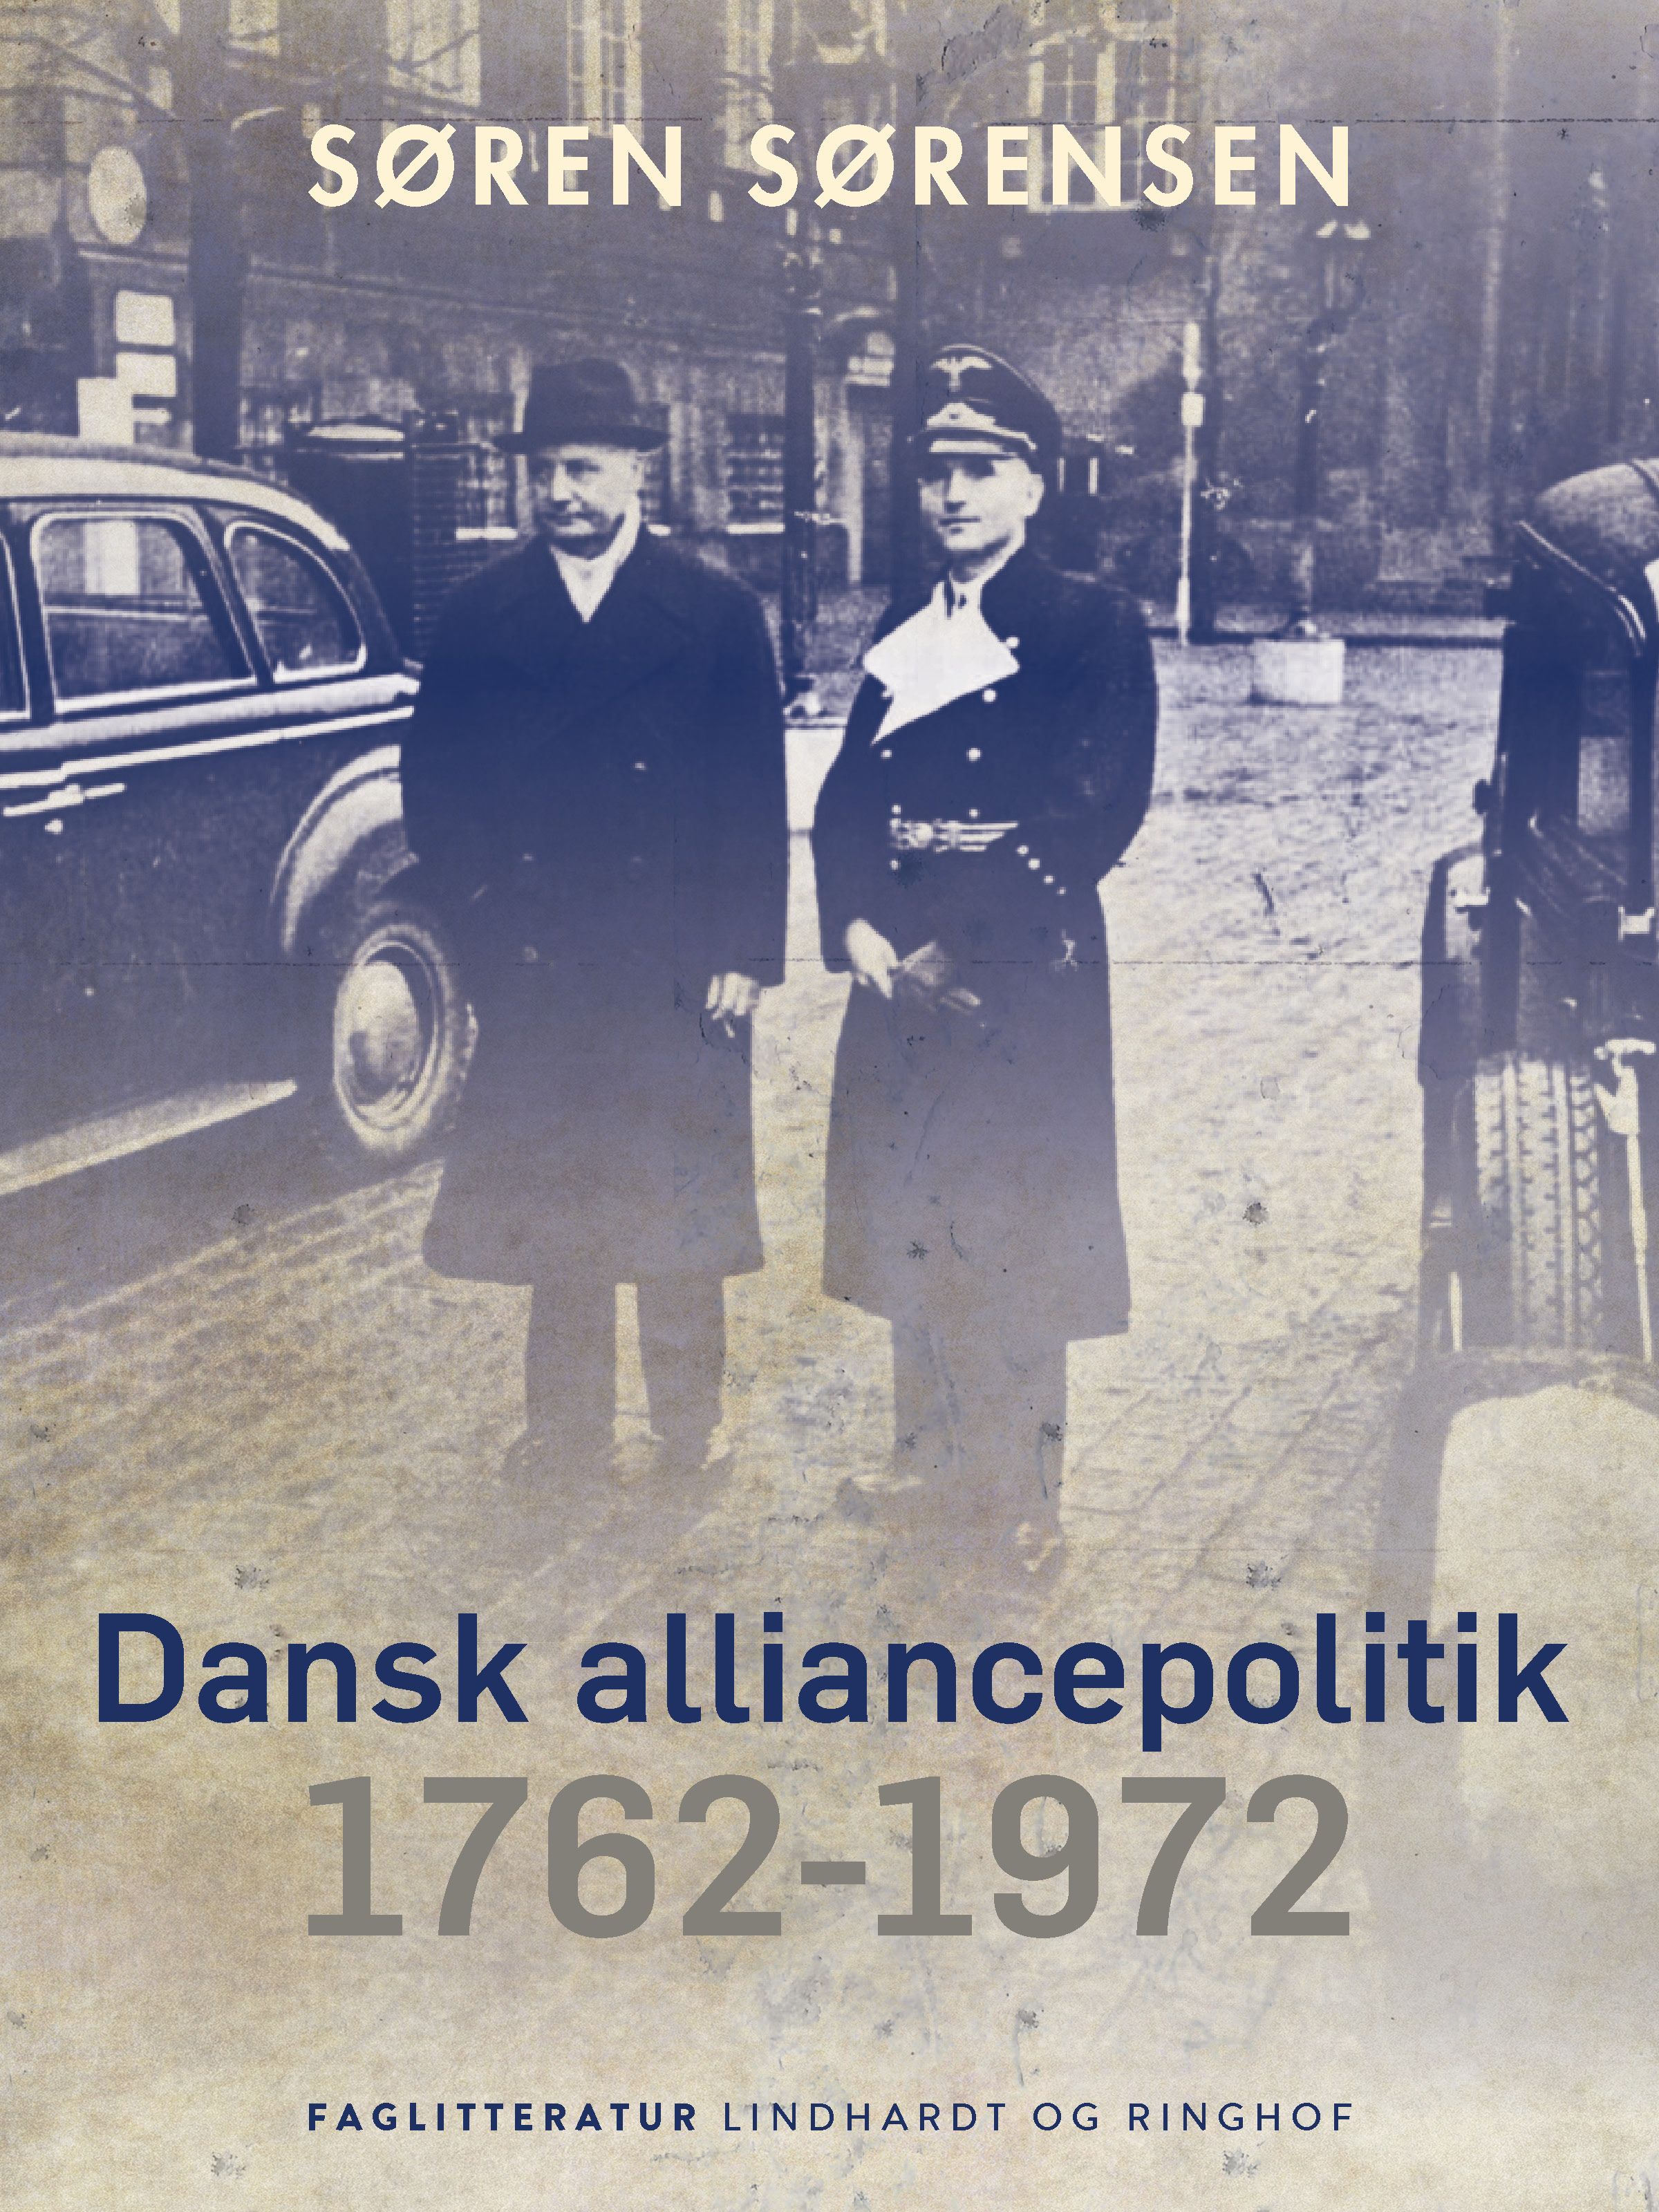 Dansk alliancepolitik 1762-1972, eBook by Søren Sørensen